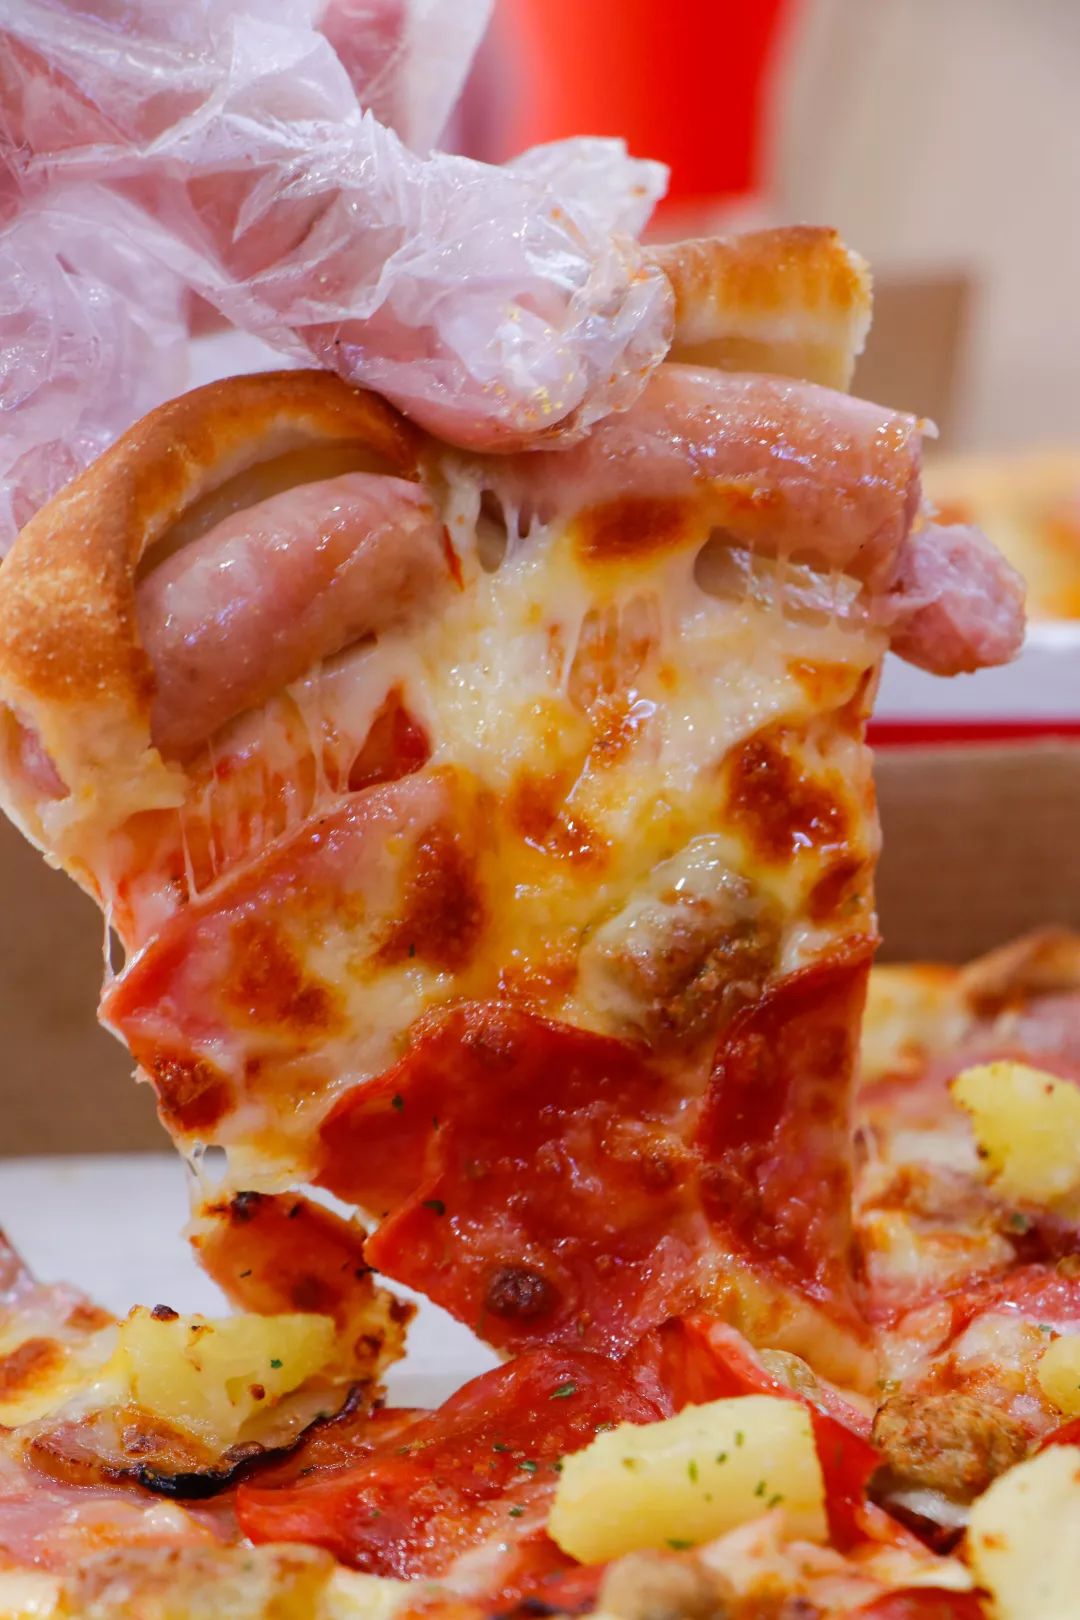 这款披萨选择了 烤肠卷边,浓郁的芝士搭配整只香肠裹在饼皮里,肉香